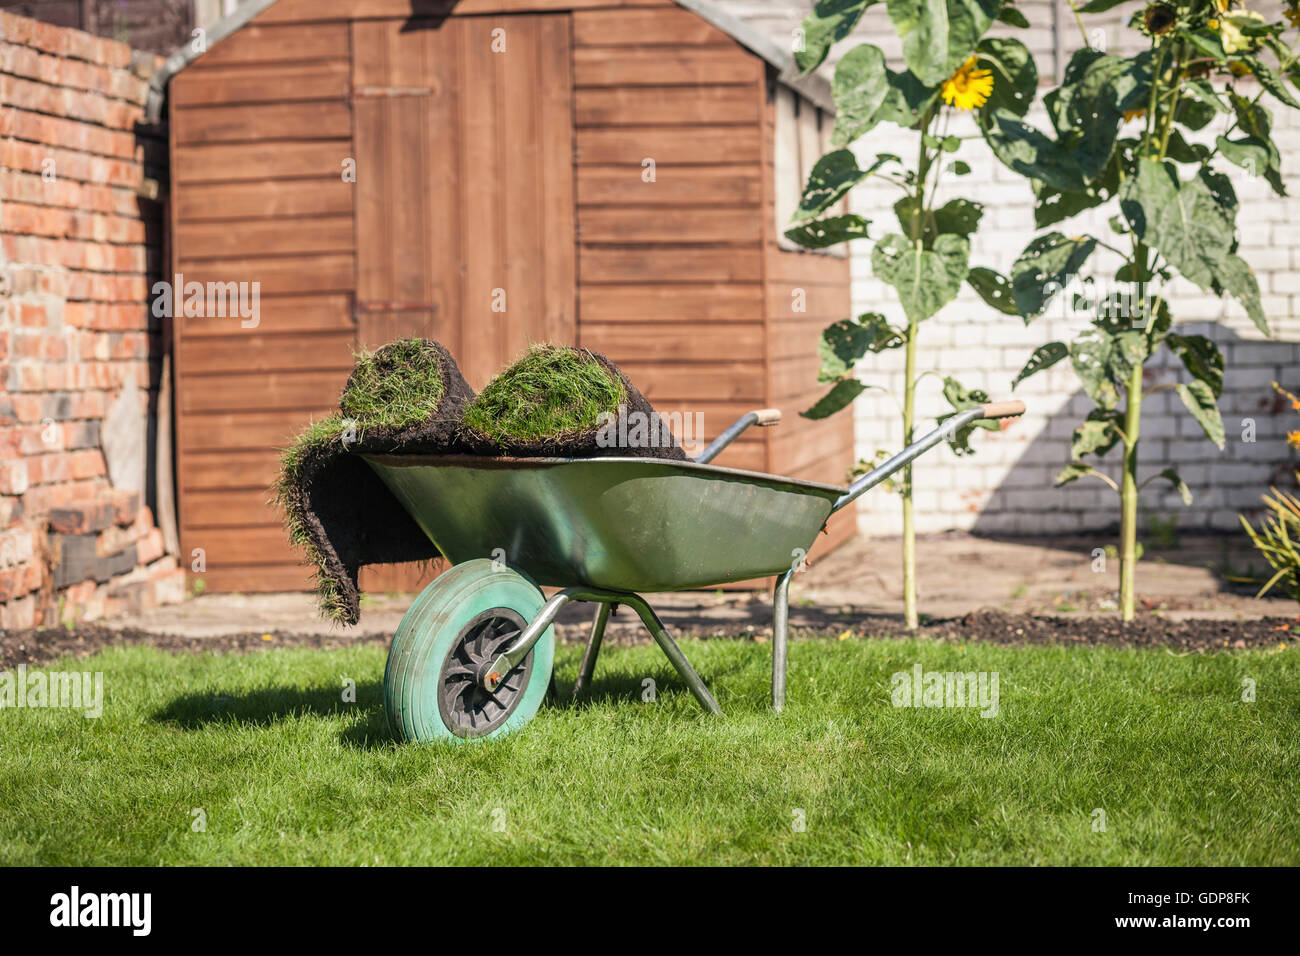 Turf rolls in wheelbarrow on garden lawn Stock Photo